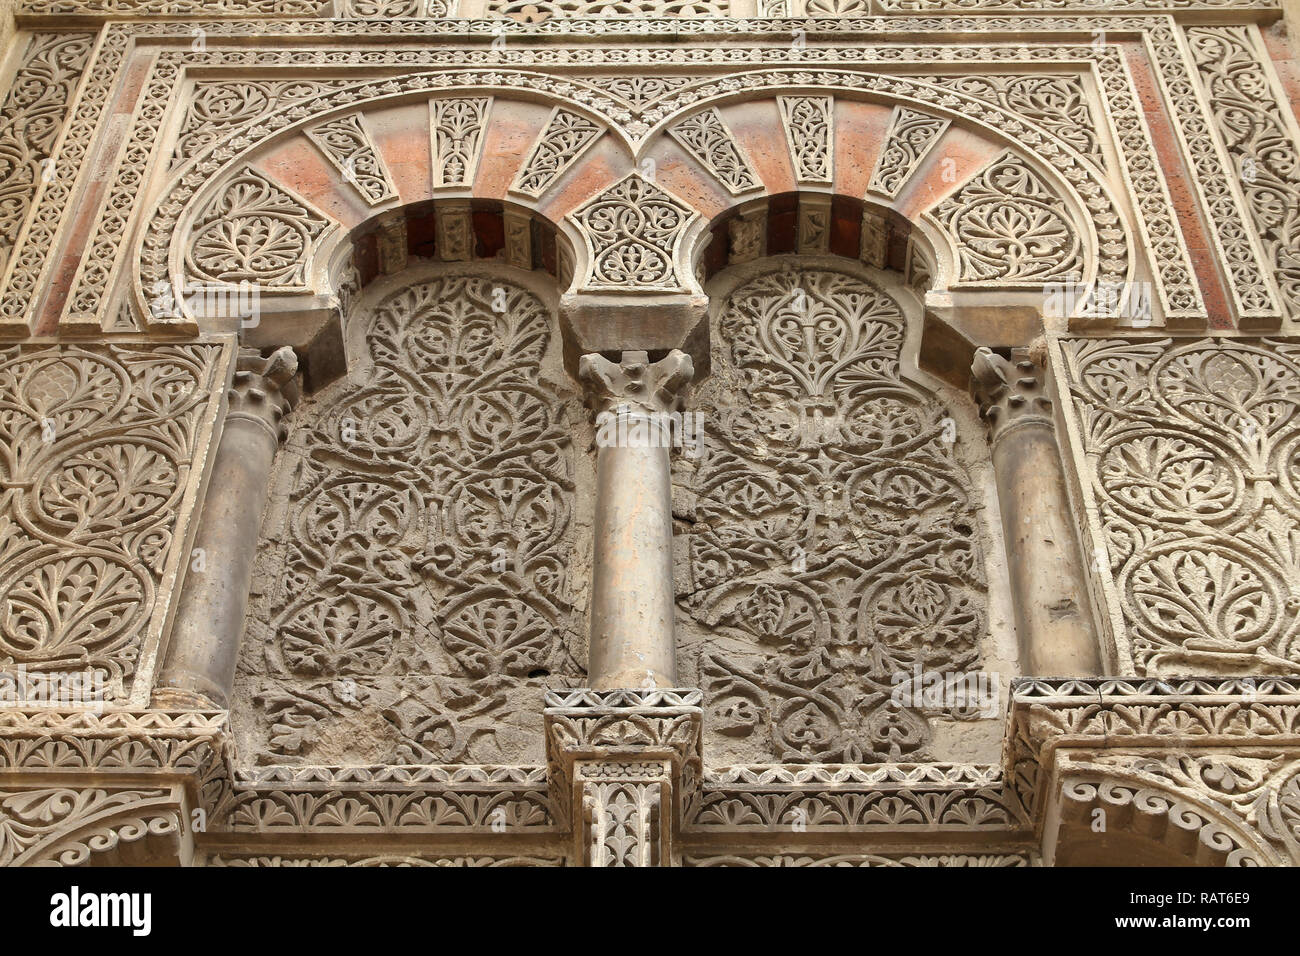 Cordoue, Espagne. La Grande Mosquée (actuellement cathédrale catholique). UNESCO World Heritage Site. Mashrabiya fenêtre avec treillis de pierre. Belle l'art. Banque D'Images